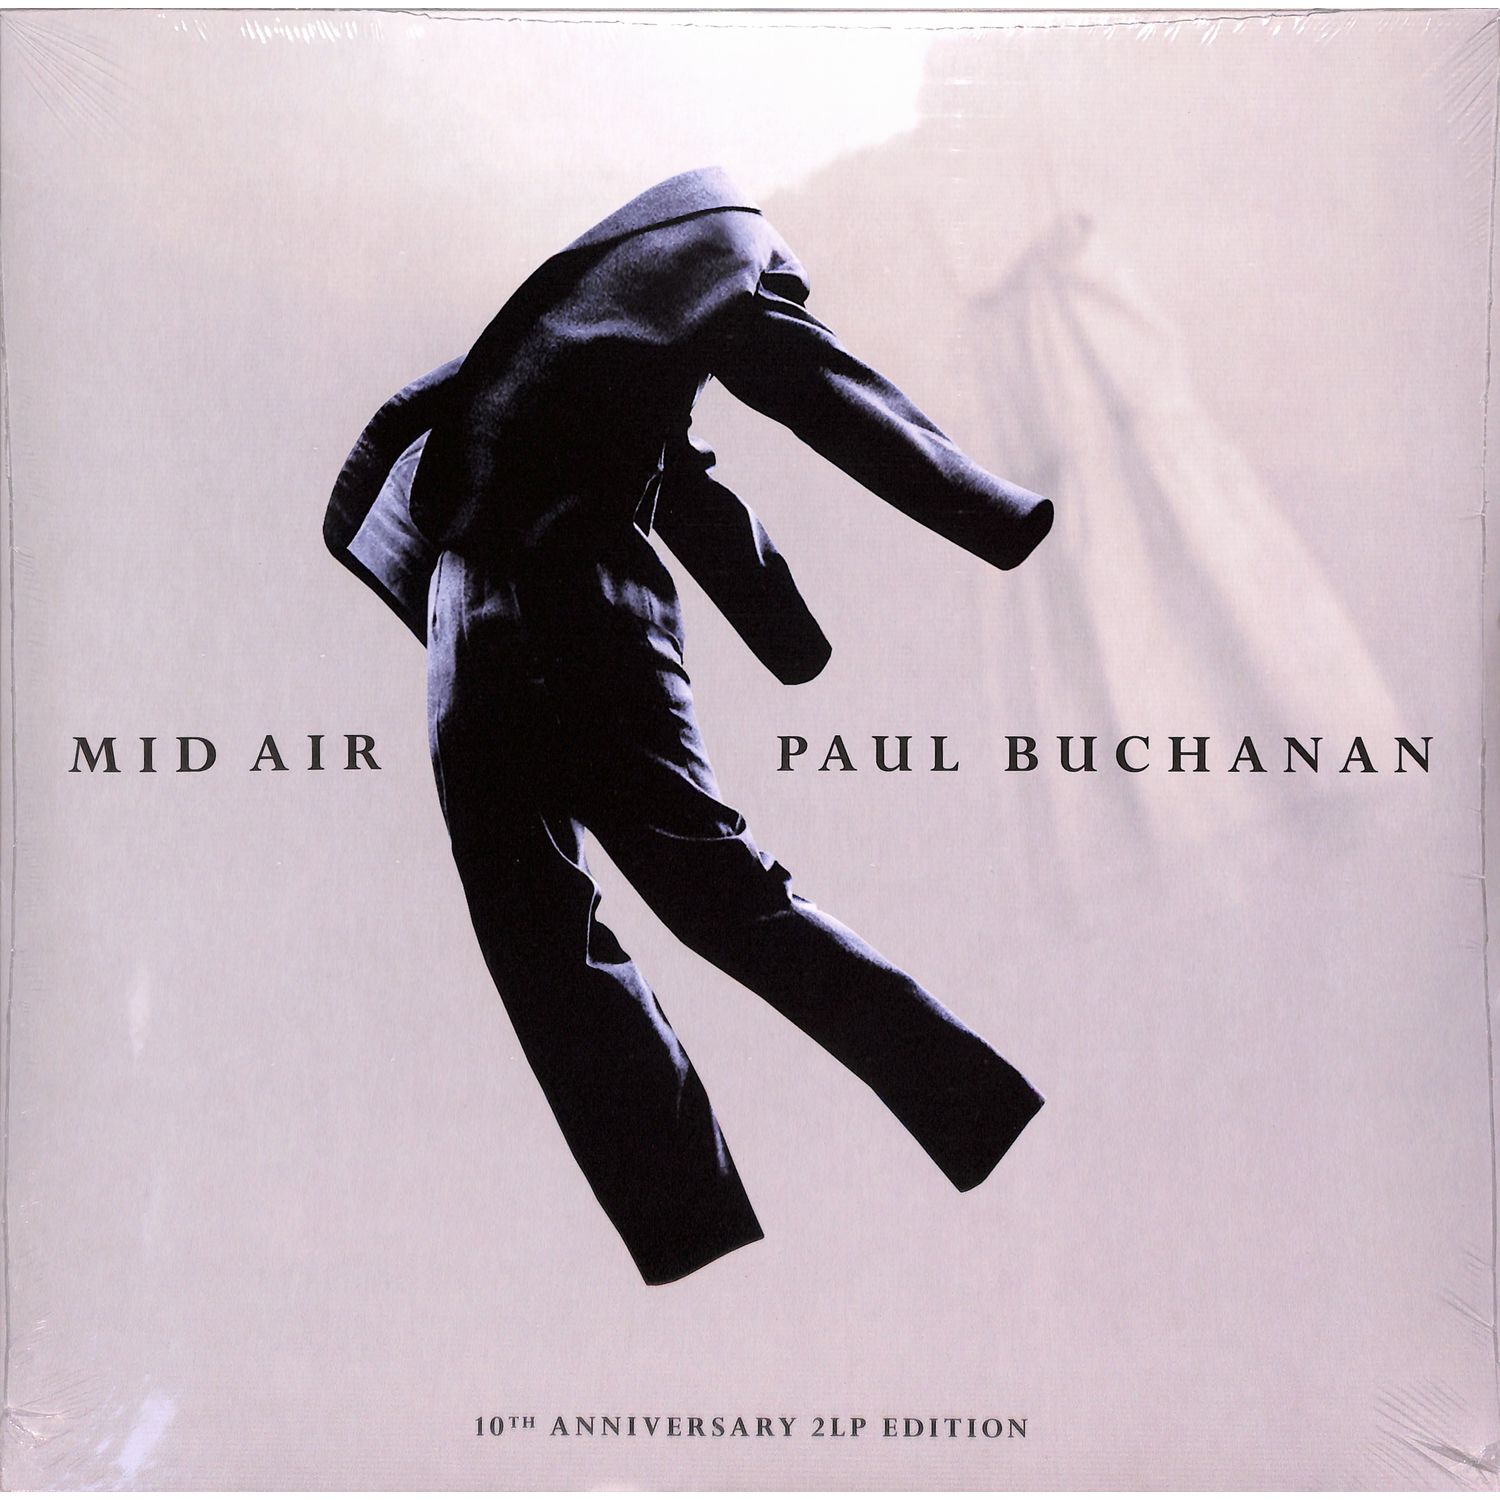 Paul Buchanan - MID AIR 